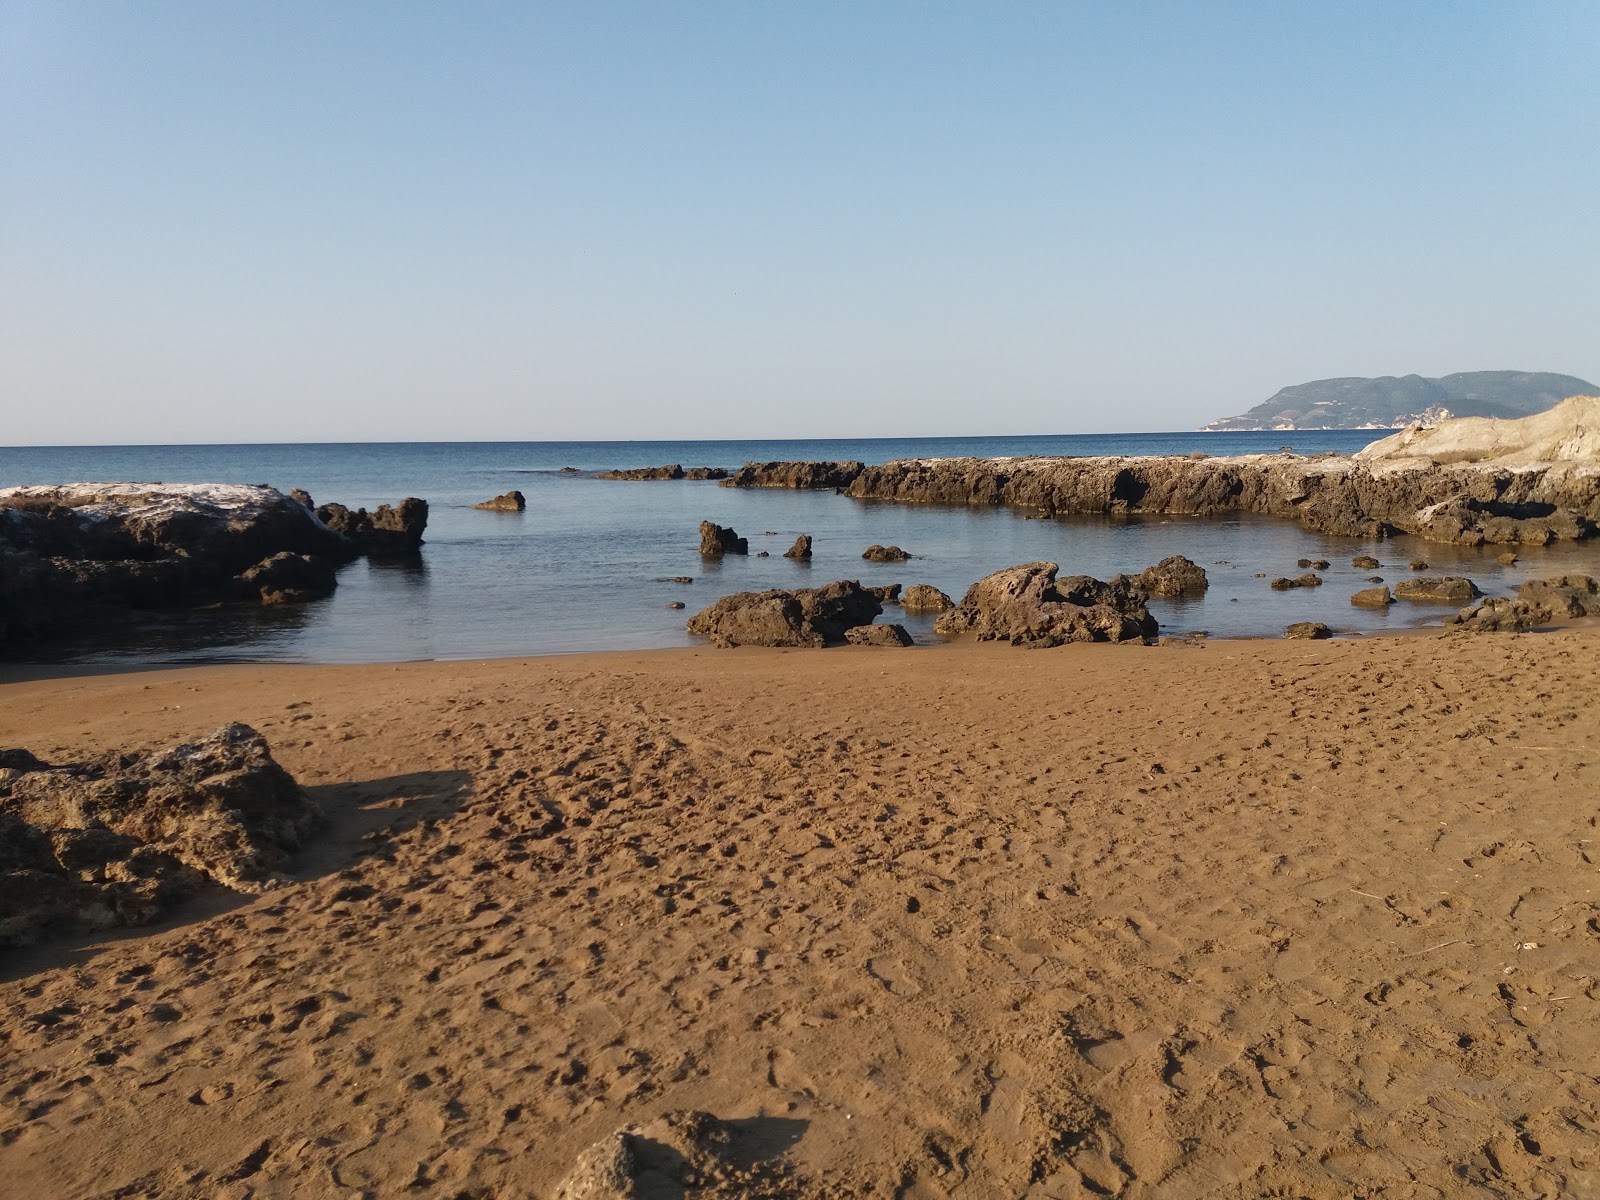 Fotografija Sekania beach nahaja se v naravnem okolju